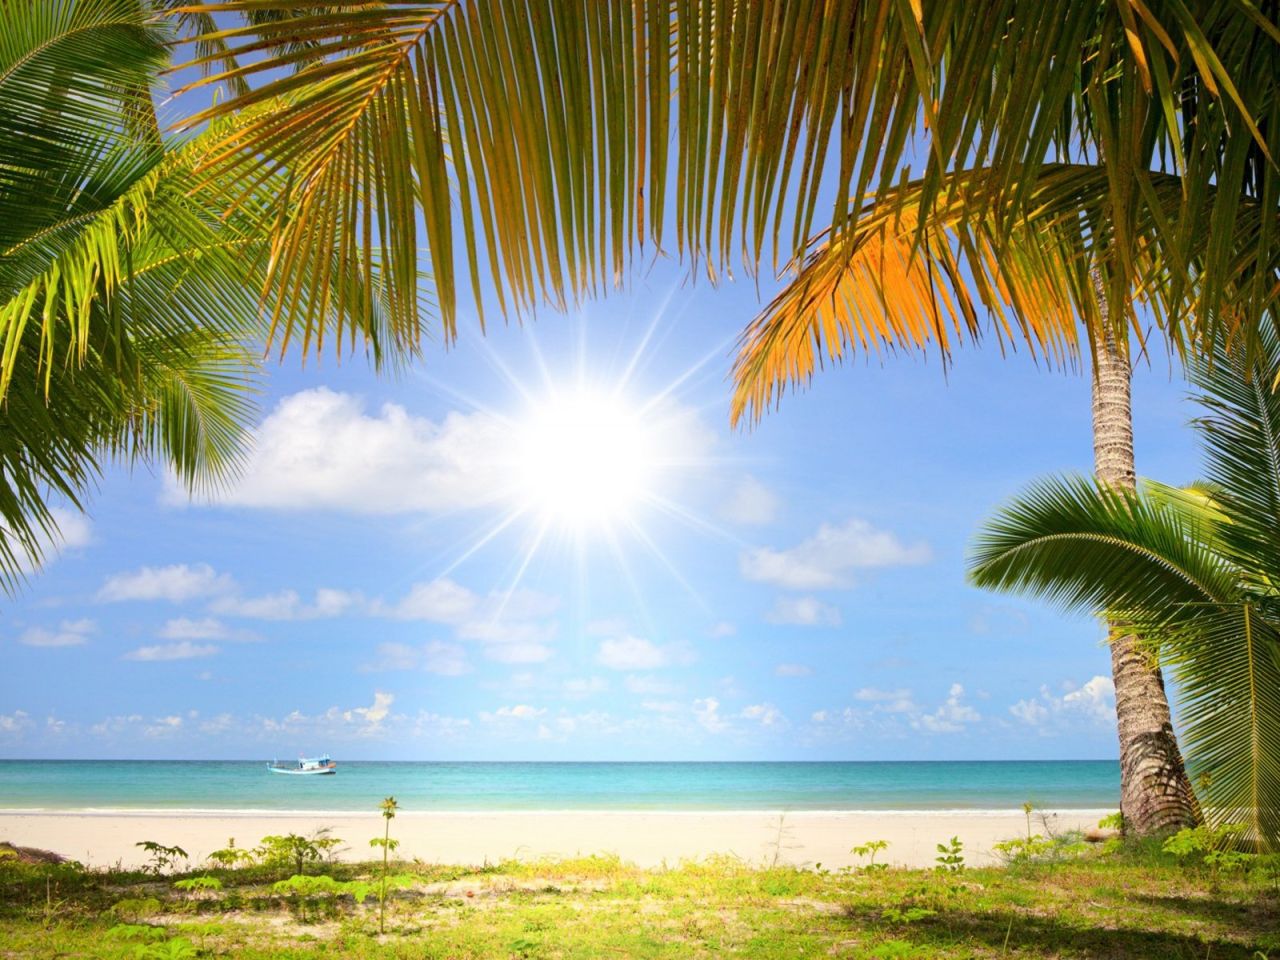 Море пляж пальмы солнце